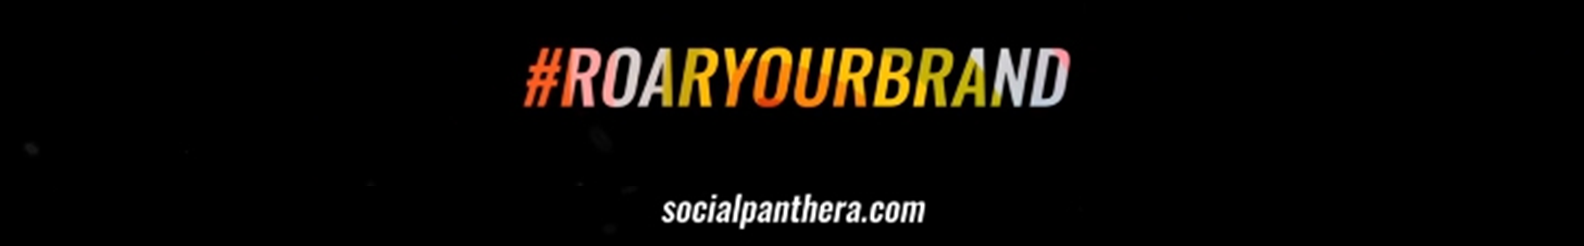 Social Panthera's profile banner